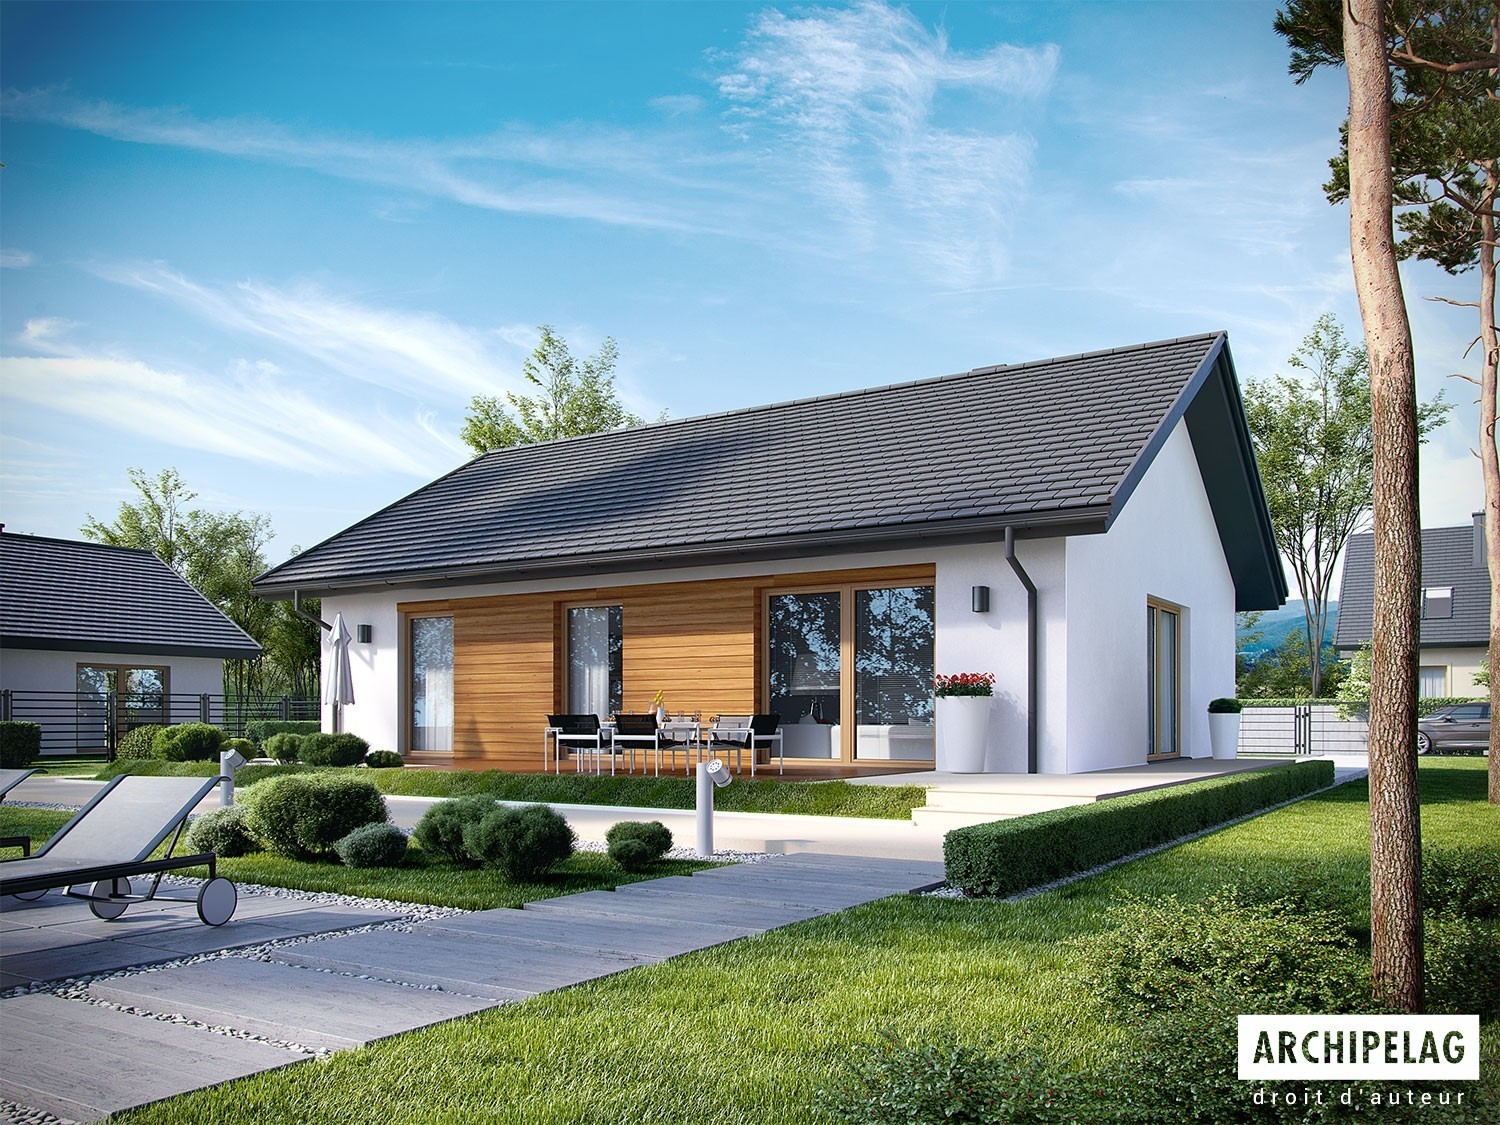 Option, Maison bois kit, plan de maison plain-pied 100 m² permis de construire gratuite